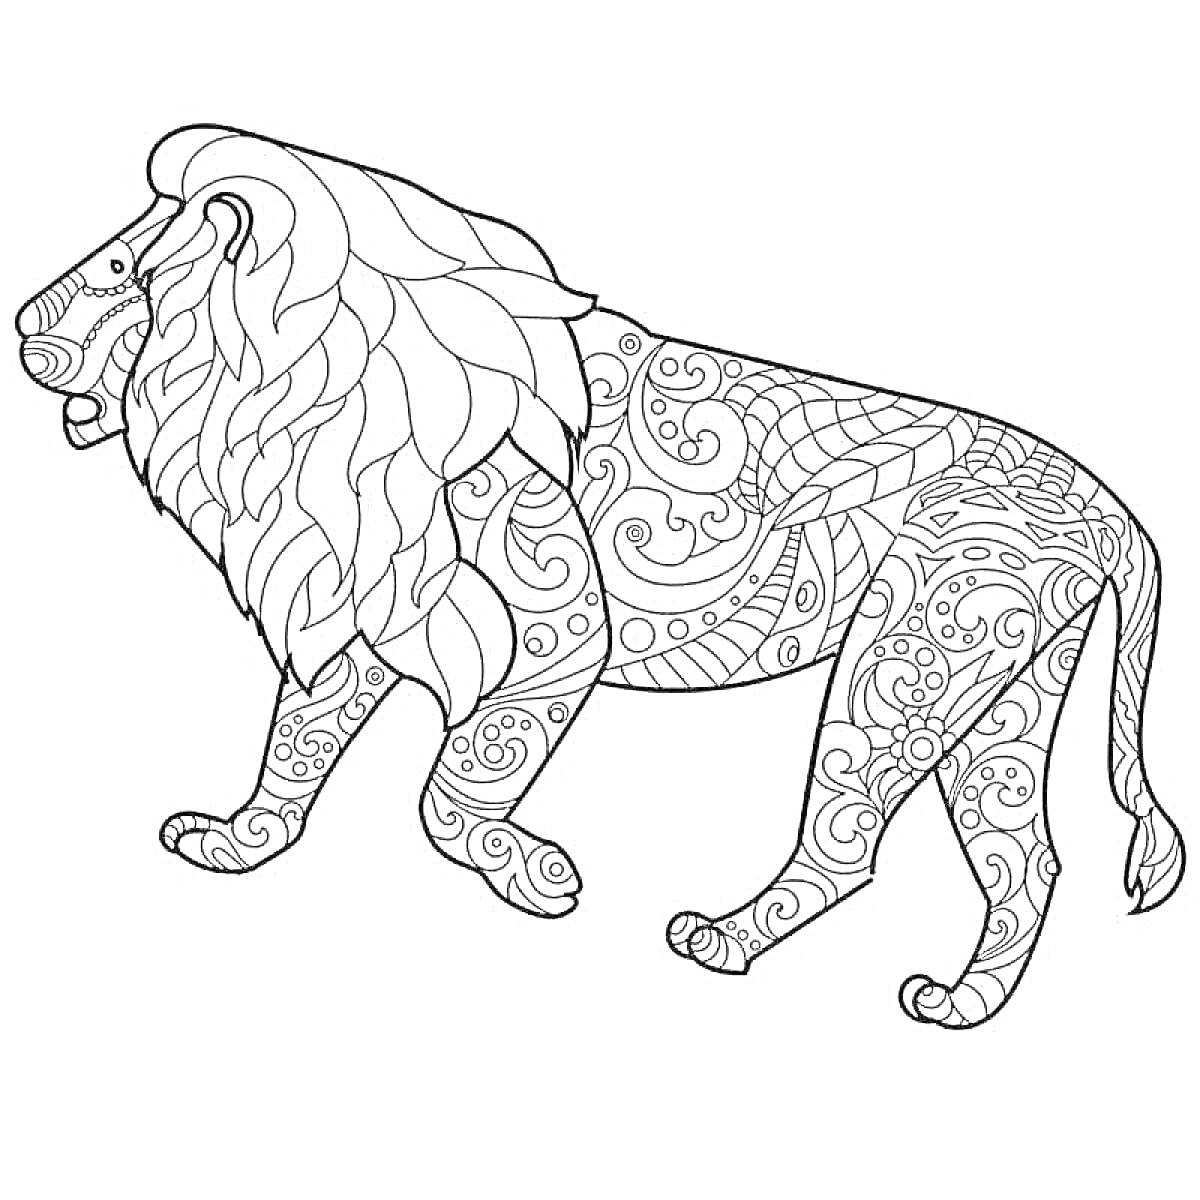 Раскраска Лев с узорами из листьев и завитков